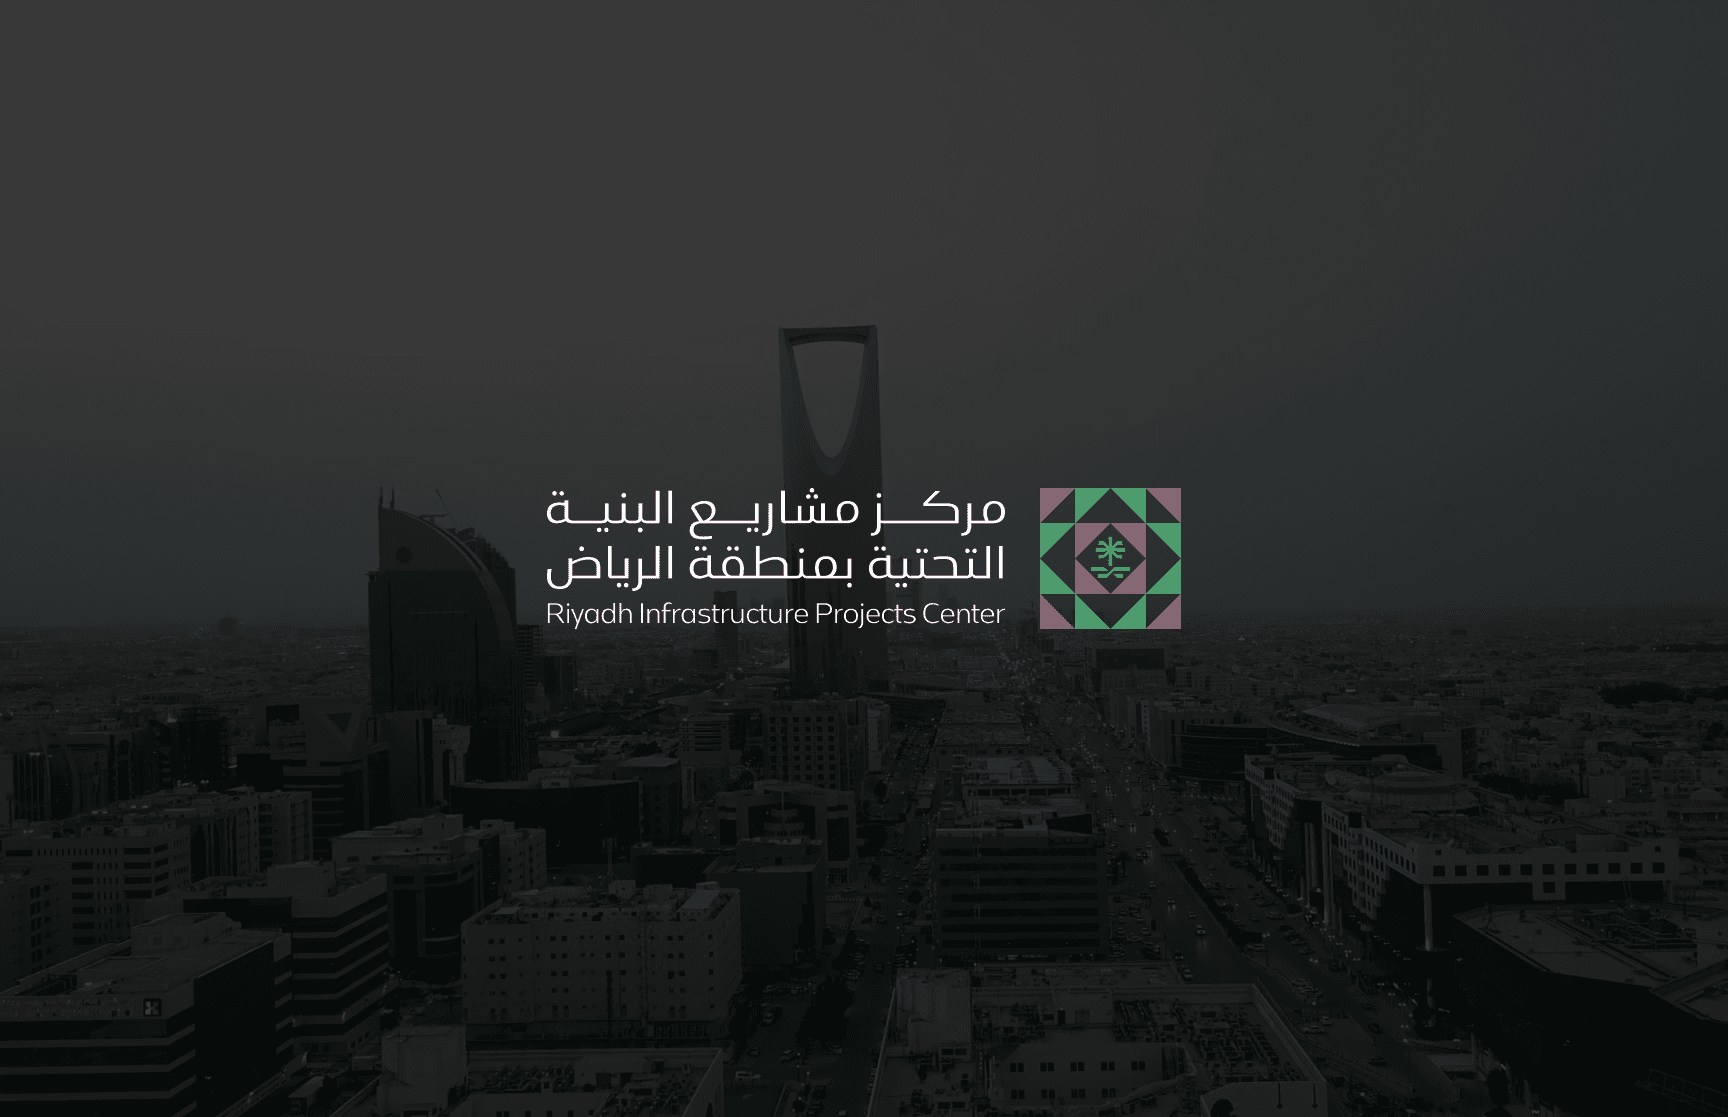 مركز مشاريع البنية التحتية بمنطقة الرياض يعتمد ضوابط تُعزّز الرقابة والامتثال والتراخيص في المنطقة